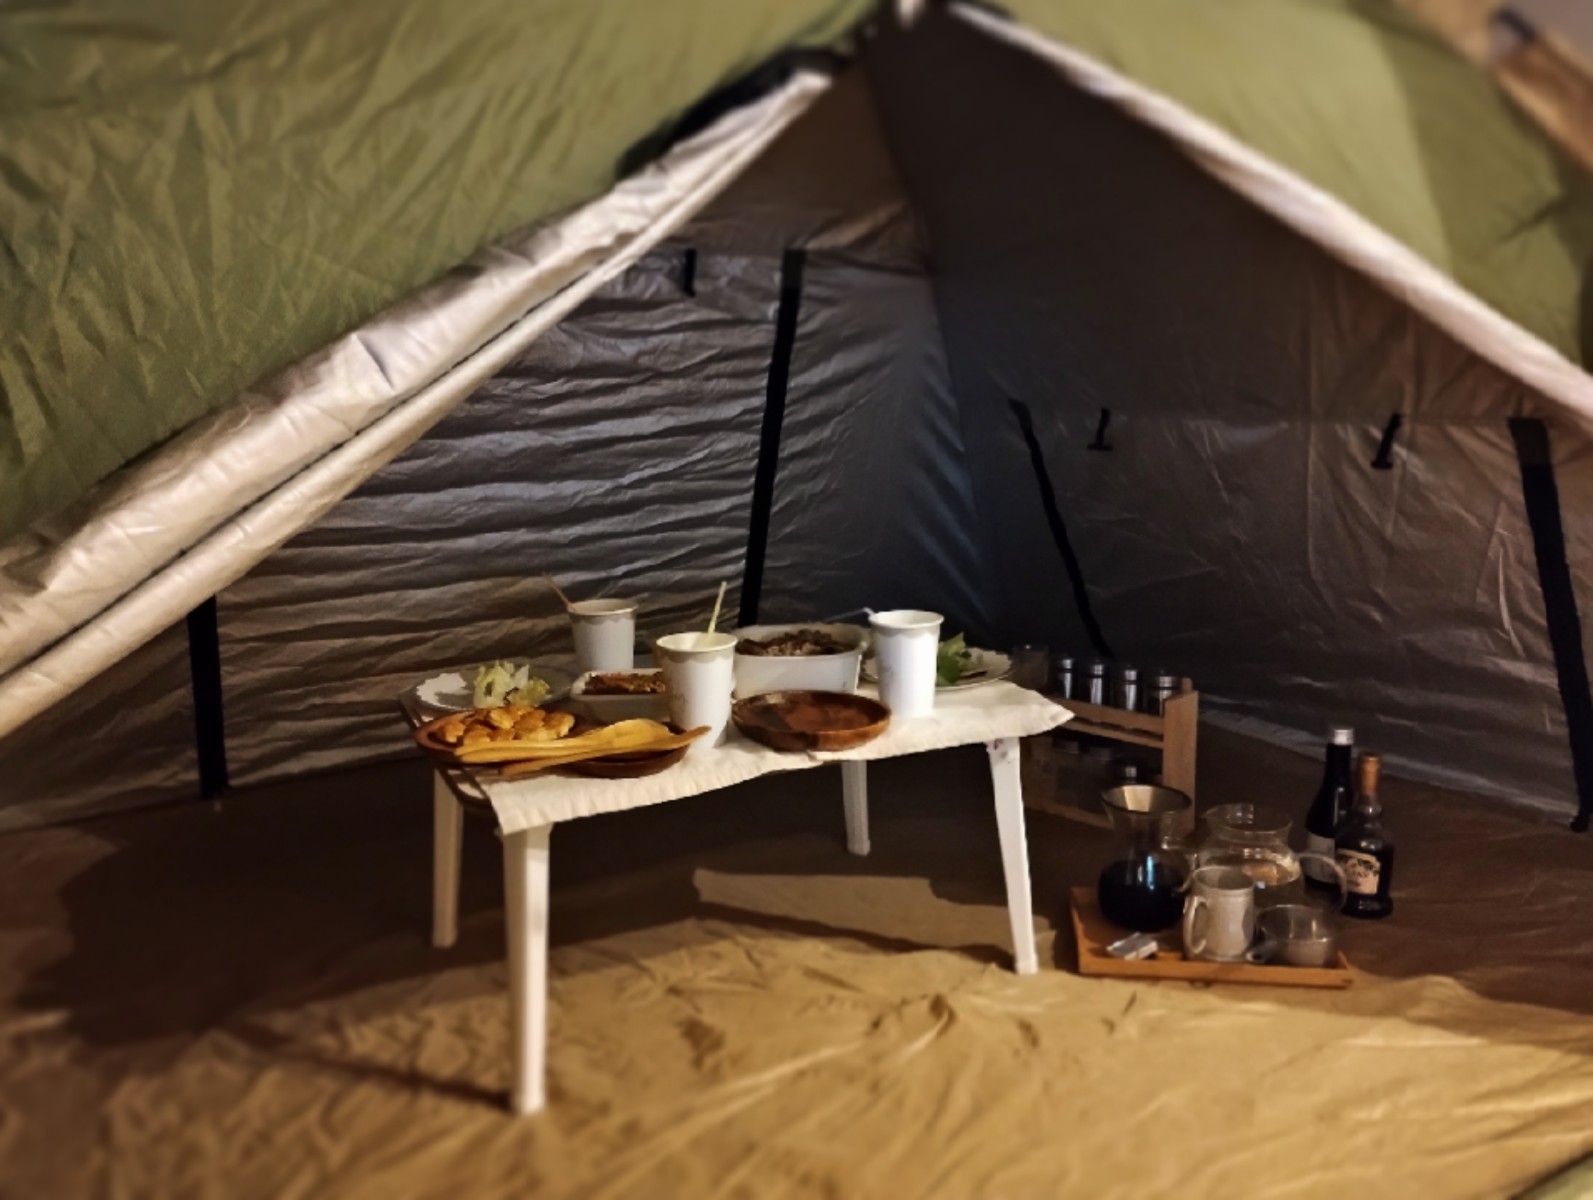 キャンプ用テントの中に、小さなテーブルとお盆が置いてあり、食べ物や飲み物が並べられている様子